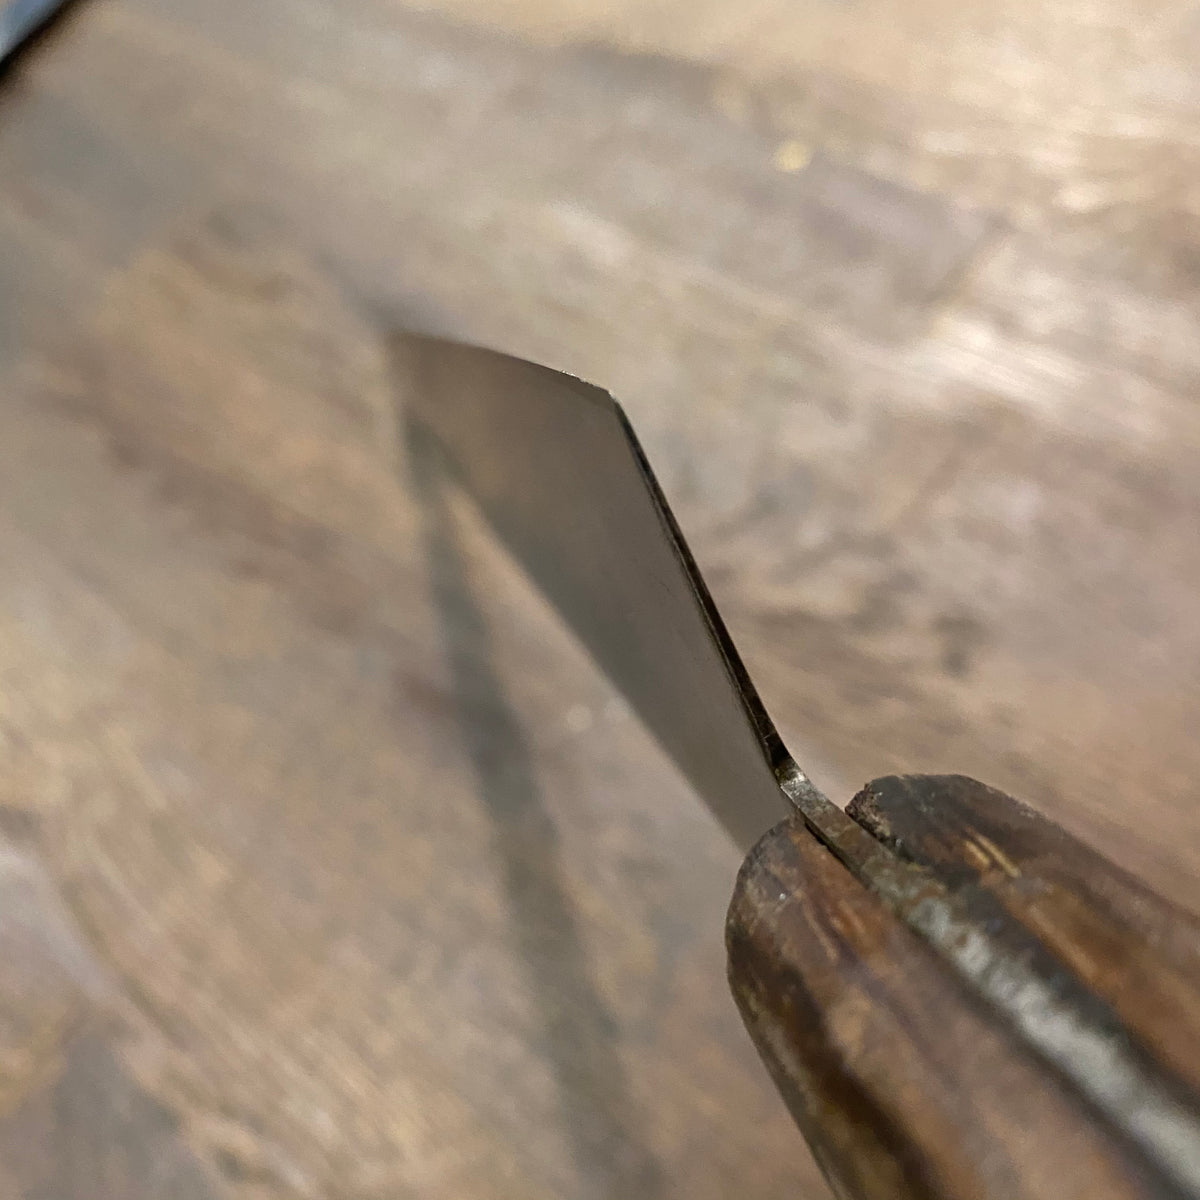 Vintage Dexter 10” Chef Knife Carbon Steel